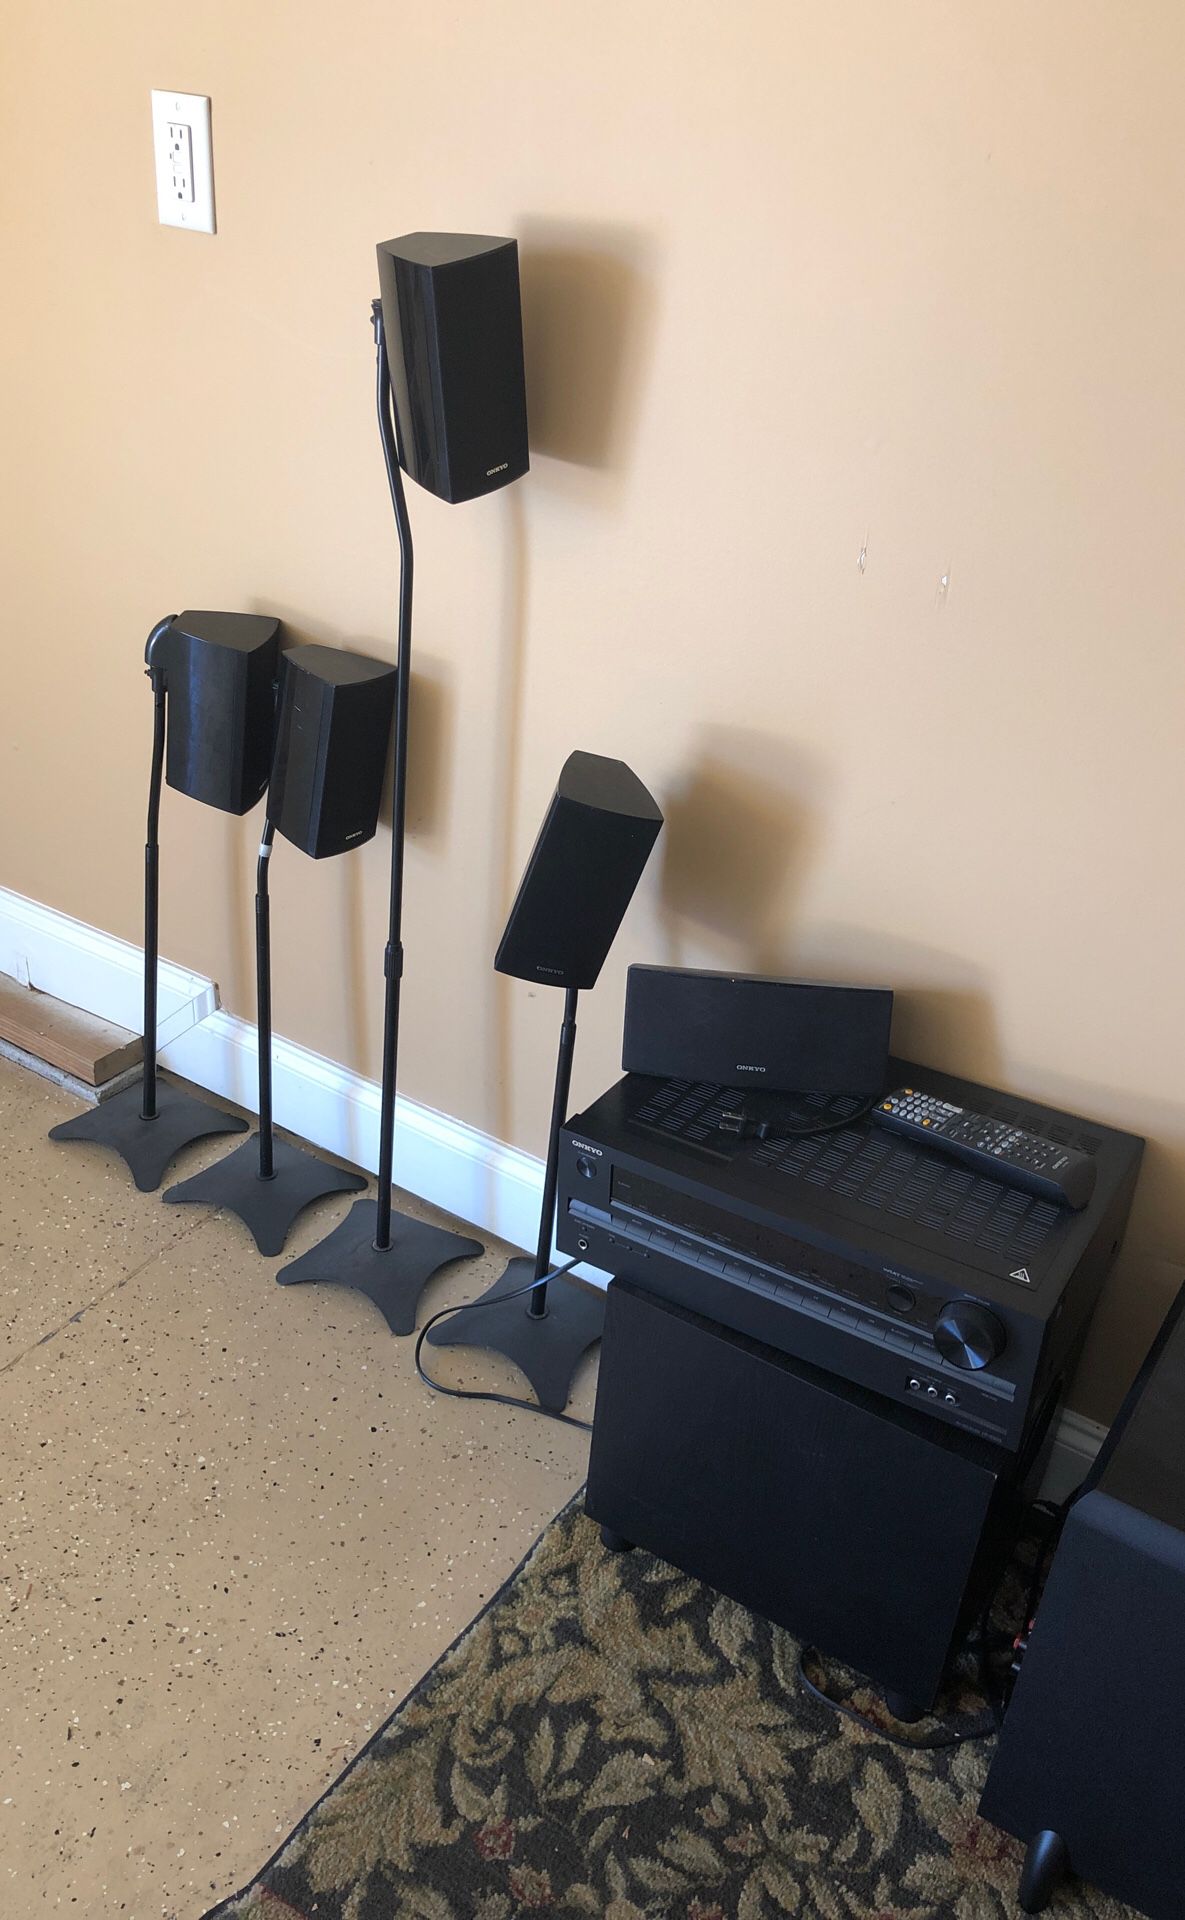 Onkyo surround sound speakers 5.1